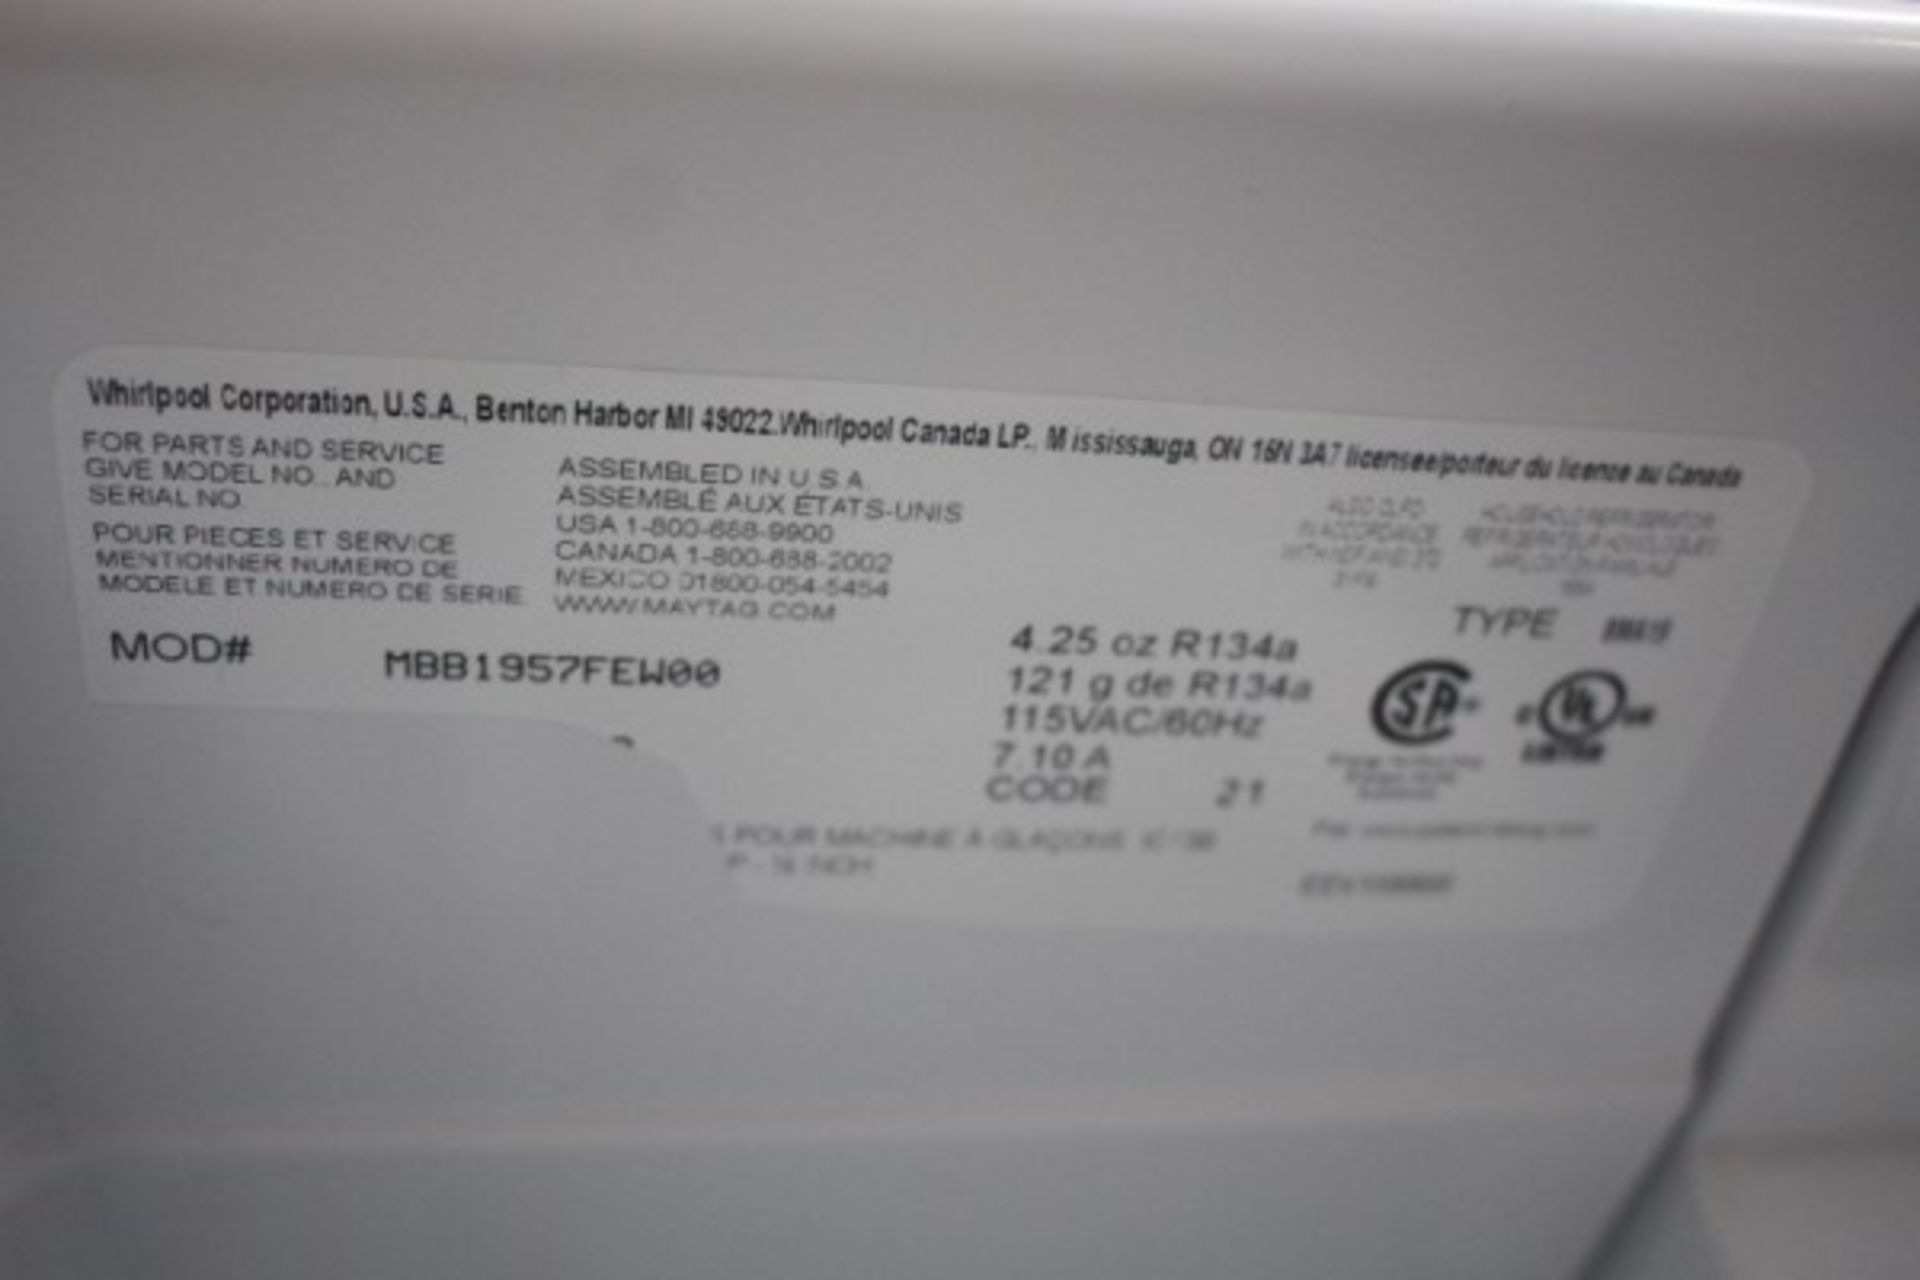 MAYTAG Fridge with Underdrawer Freezer White, 30"X30 1/2"X66" - Image 3 of 4